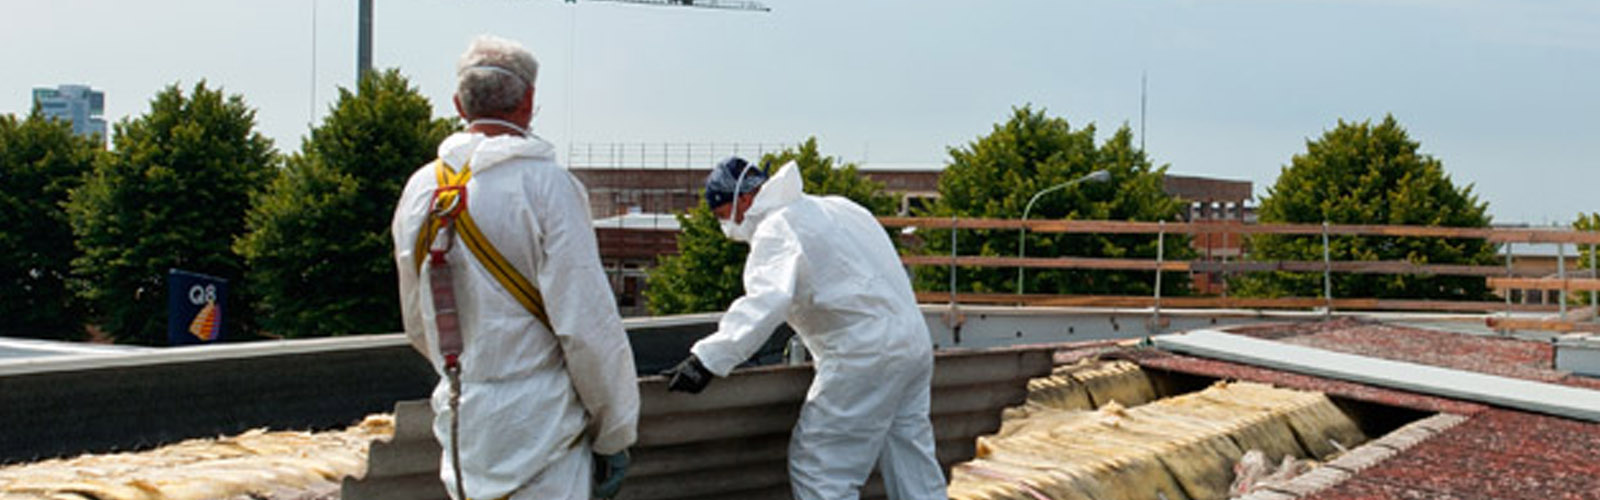 decontamination of compact asbestos